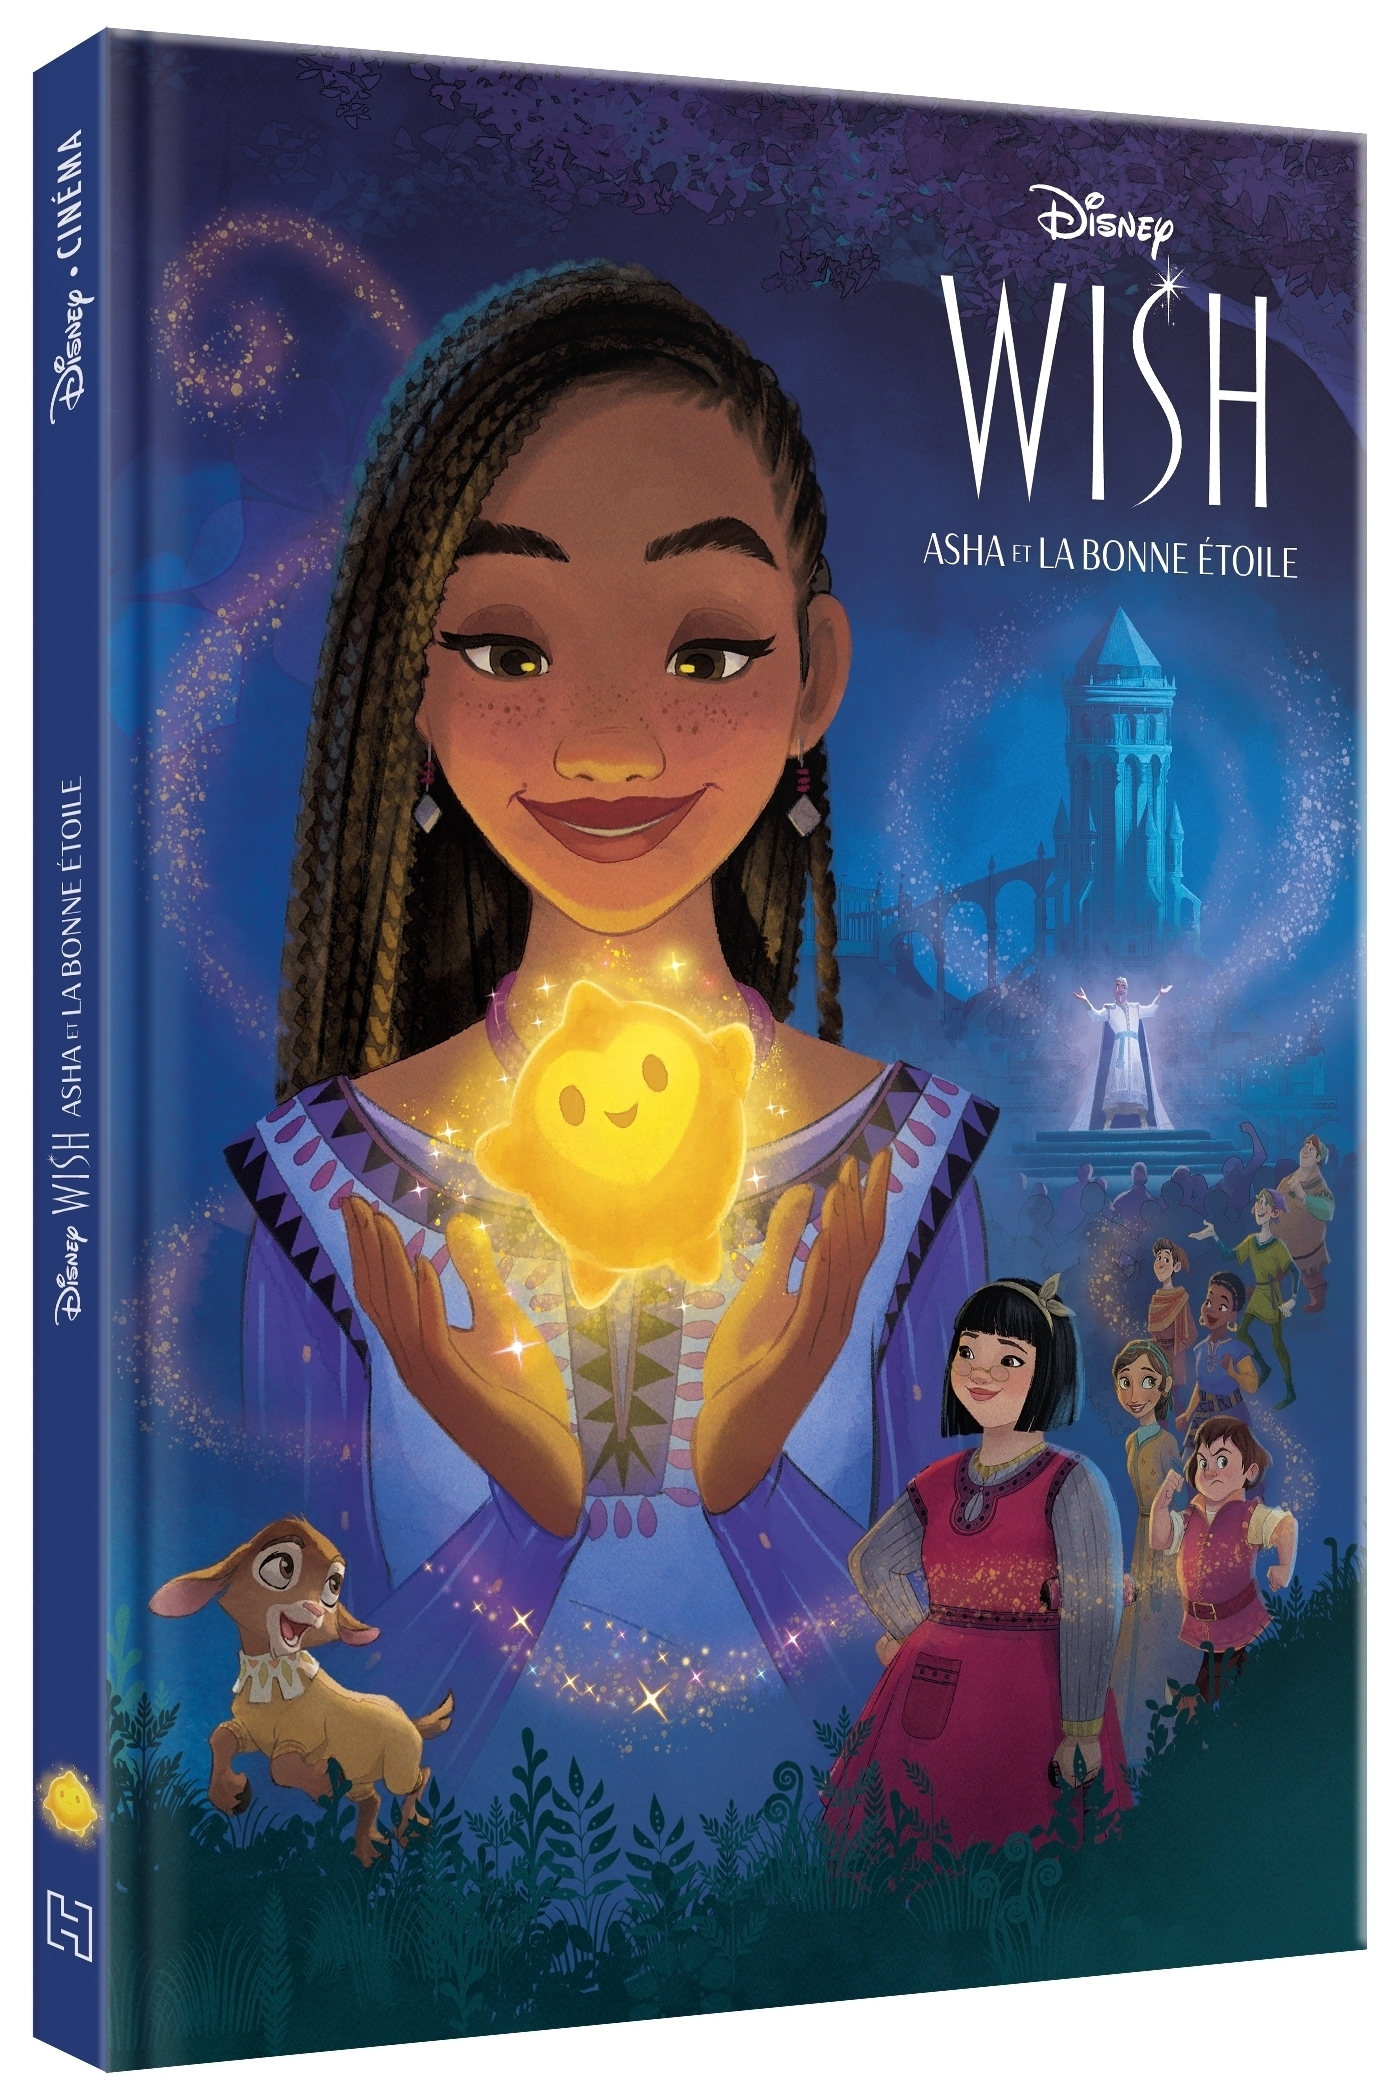 Wish, asha et la bonne étoile - l'histoire du film - disney